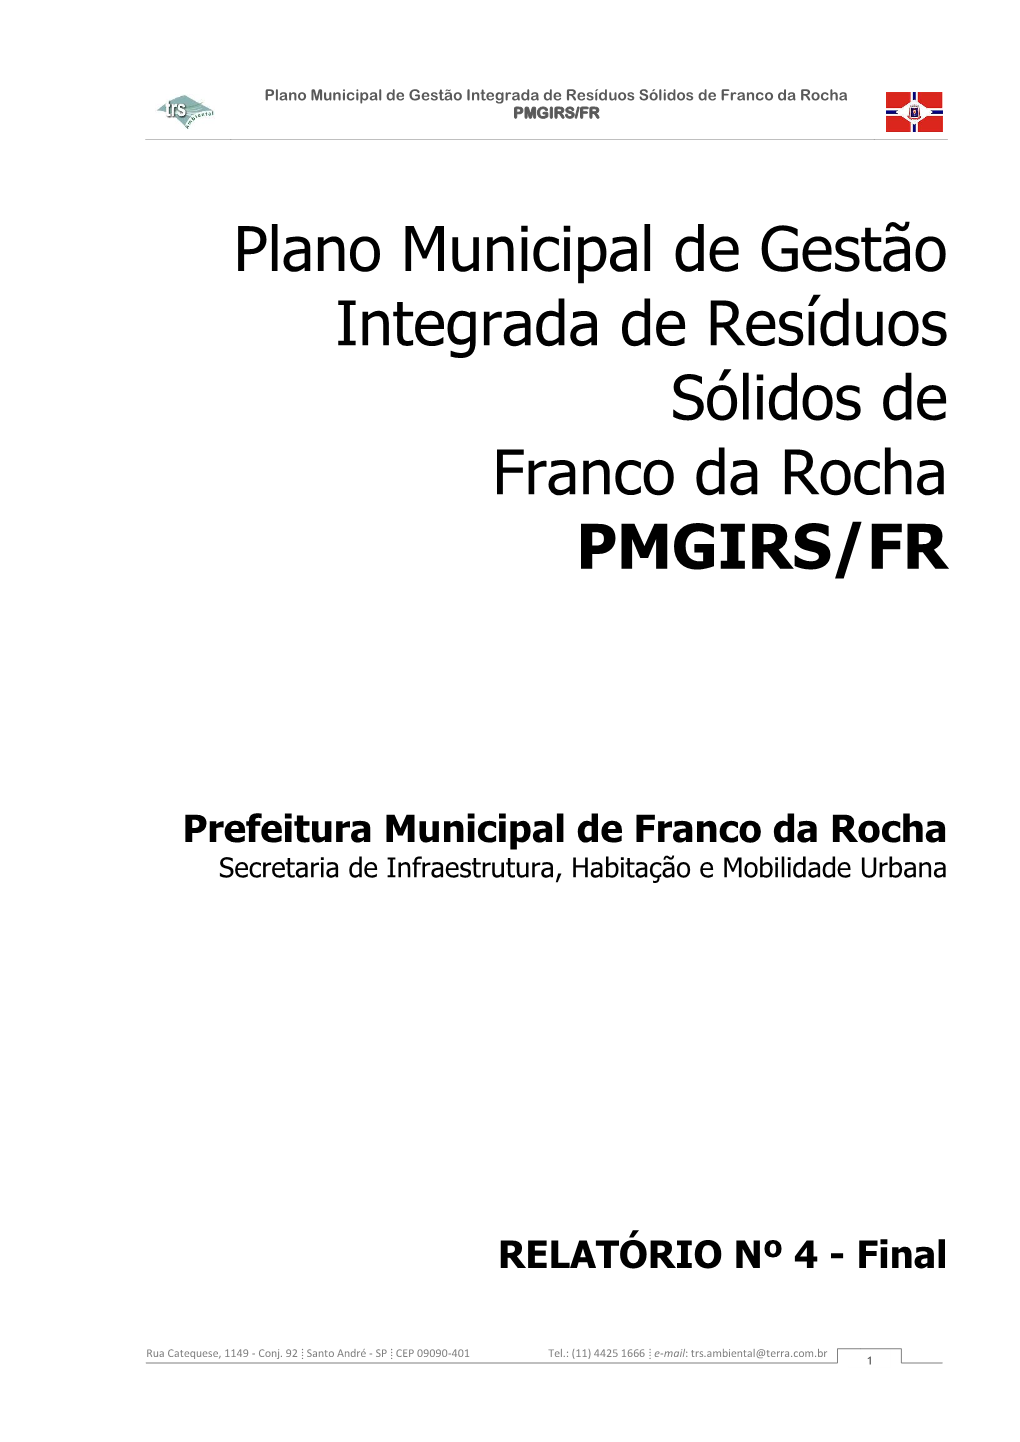 Plano Municipal De Gestão Integrada De Resíduos Sólidos De Franco Da Rocha PMGIRS/FR